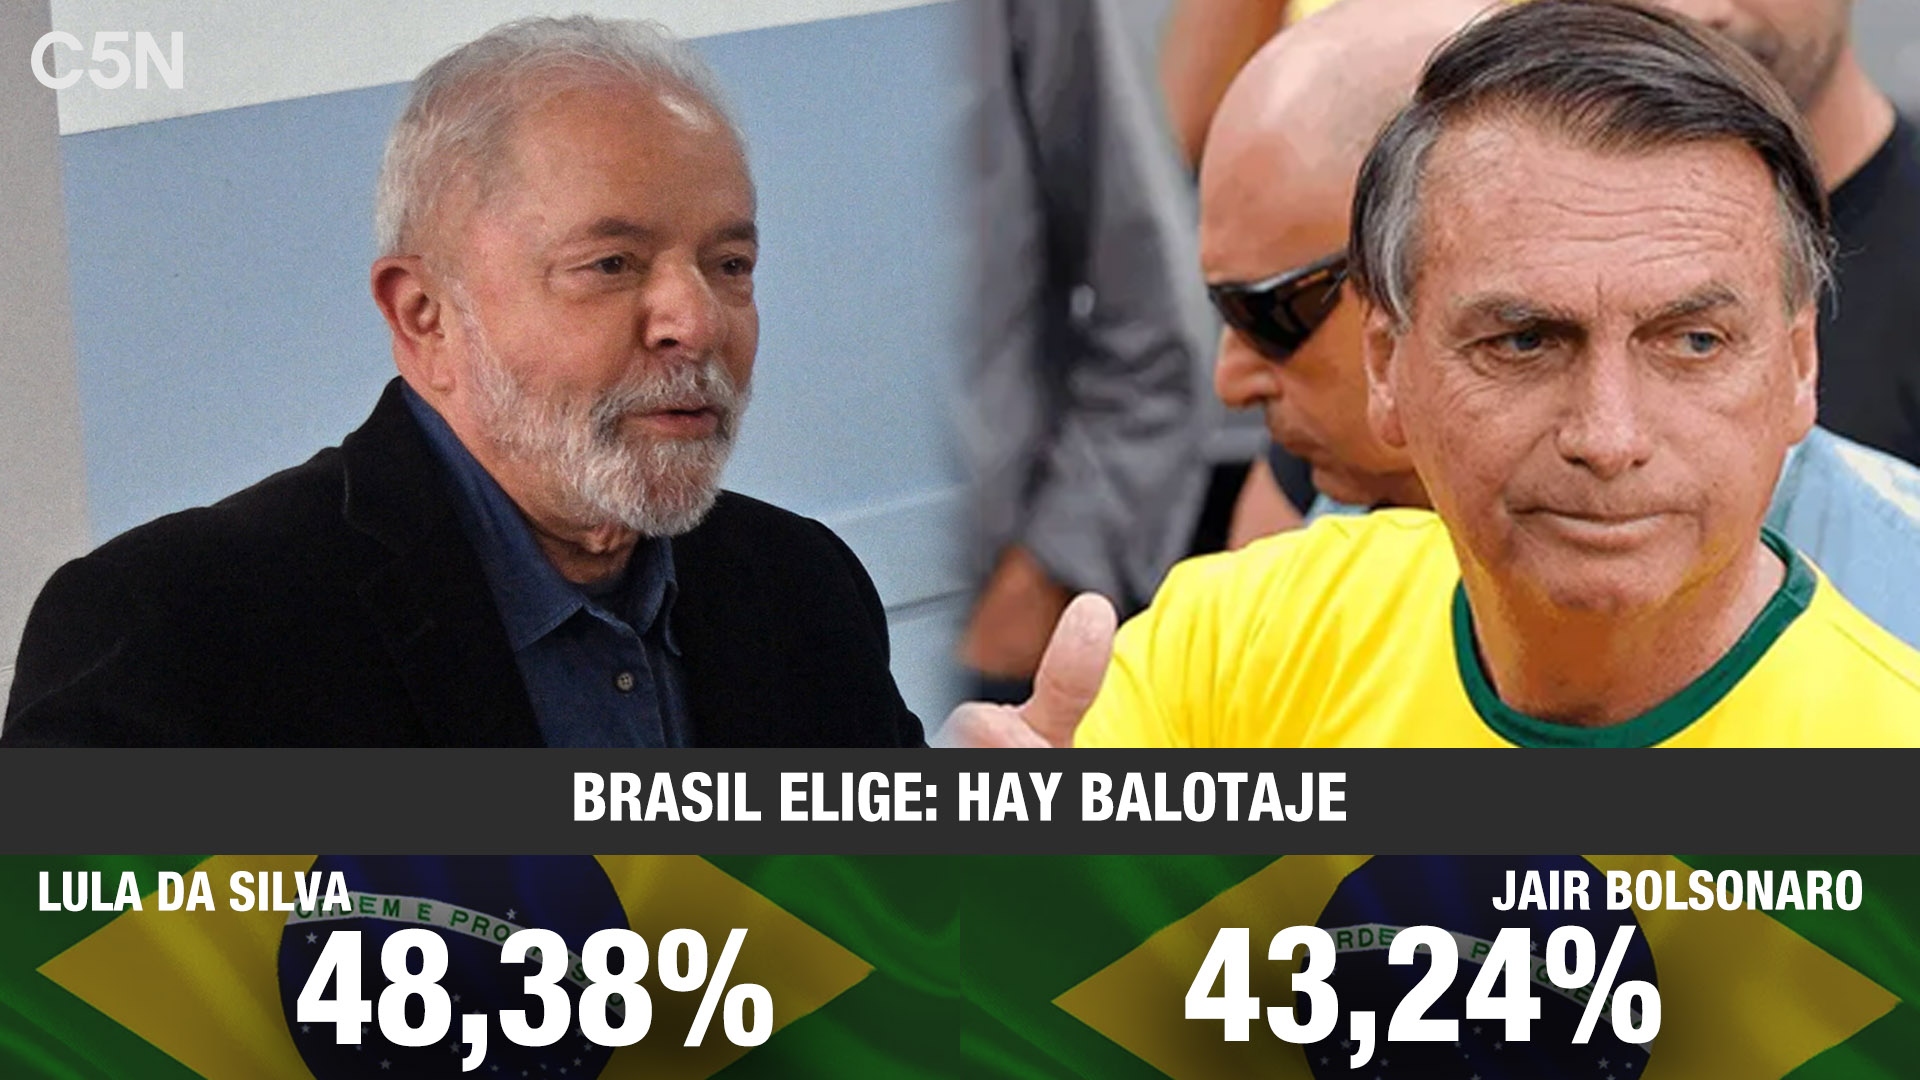 C5N on Twitter: "👉🏻Este domingo, más de 156 millones brasileños votaron en las elecciones presidenciales. 🗳️ Fue la votación más polarizada en los últimos años, entre el jefe de Estado @jairbolsonaro, que